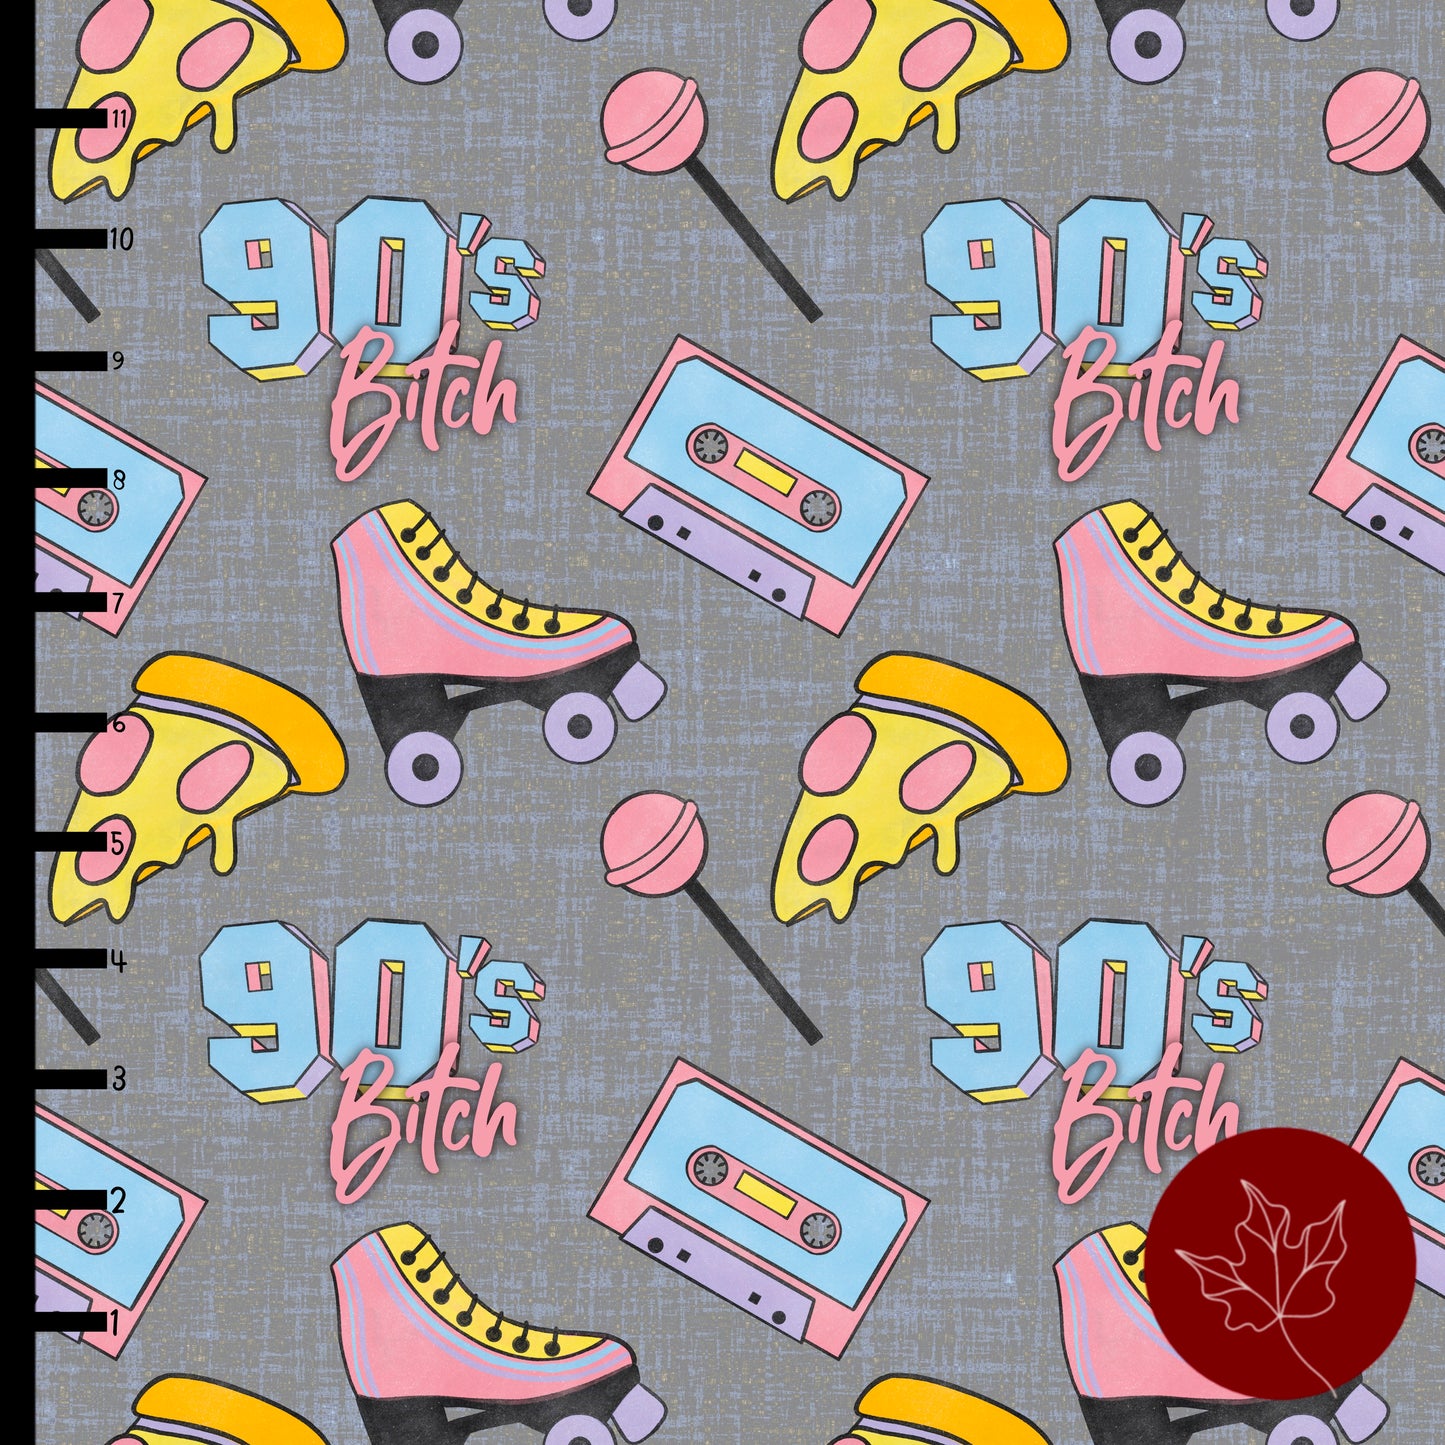 90s Bitch